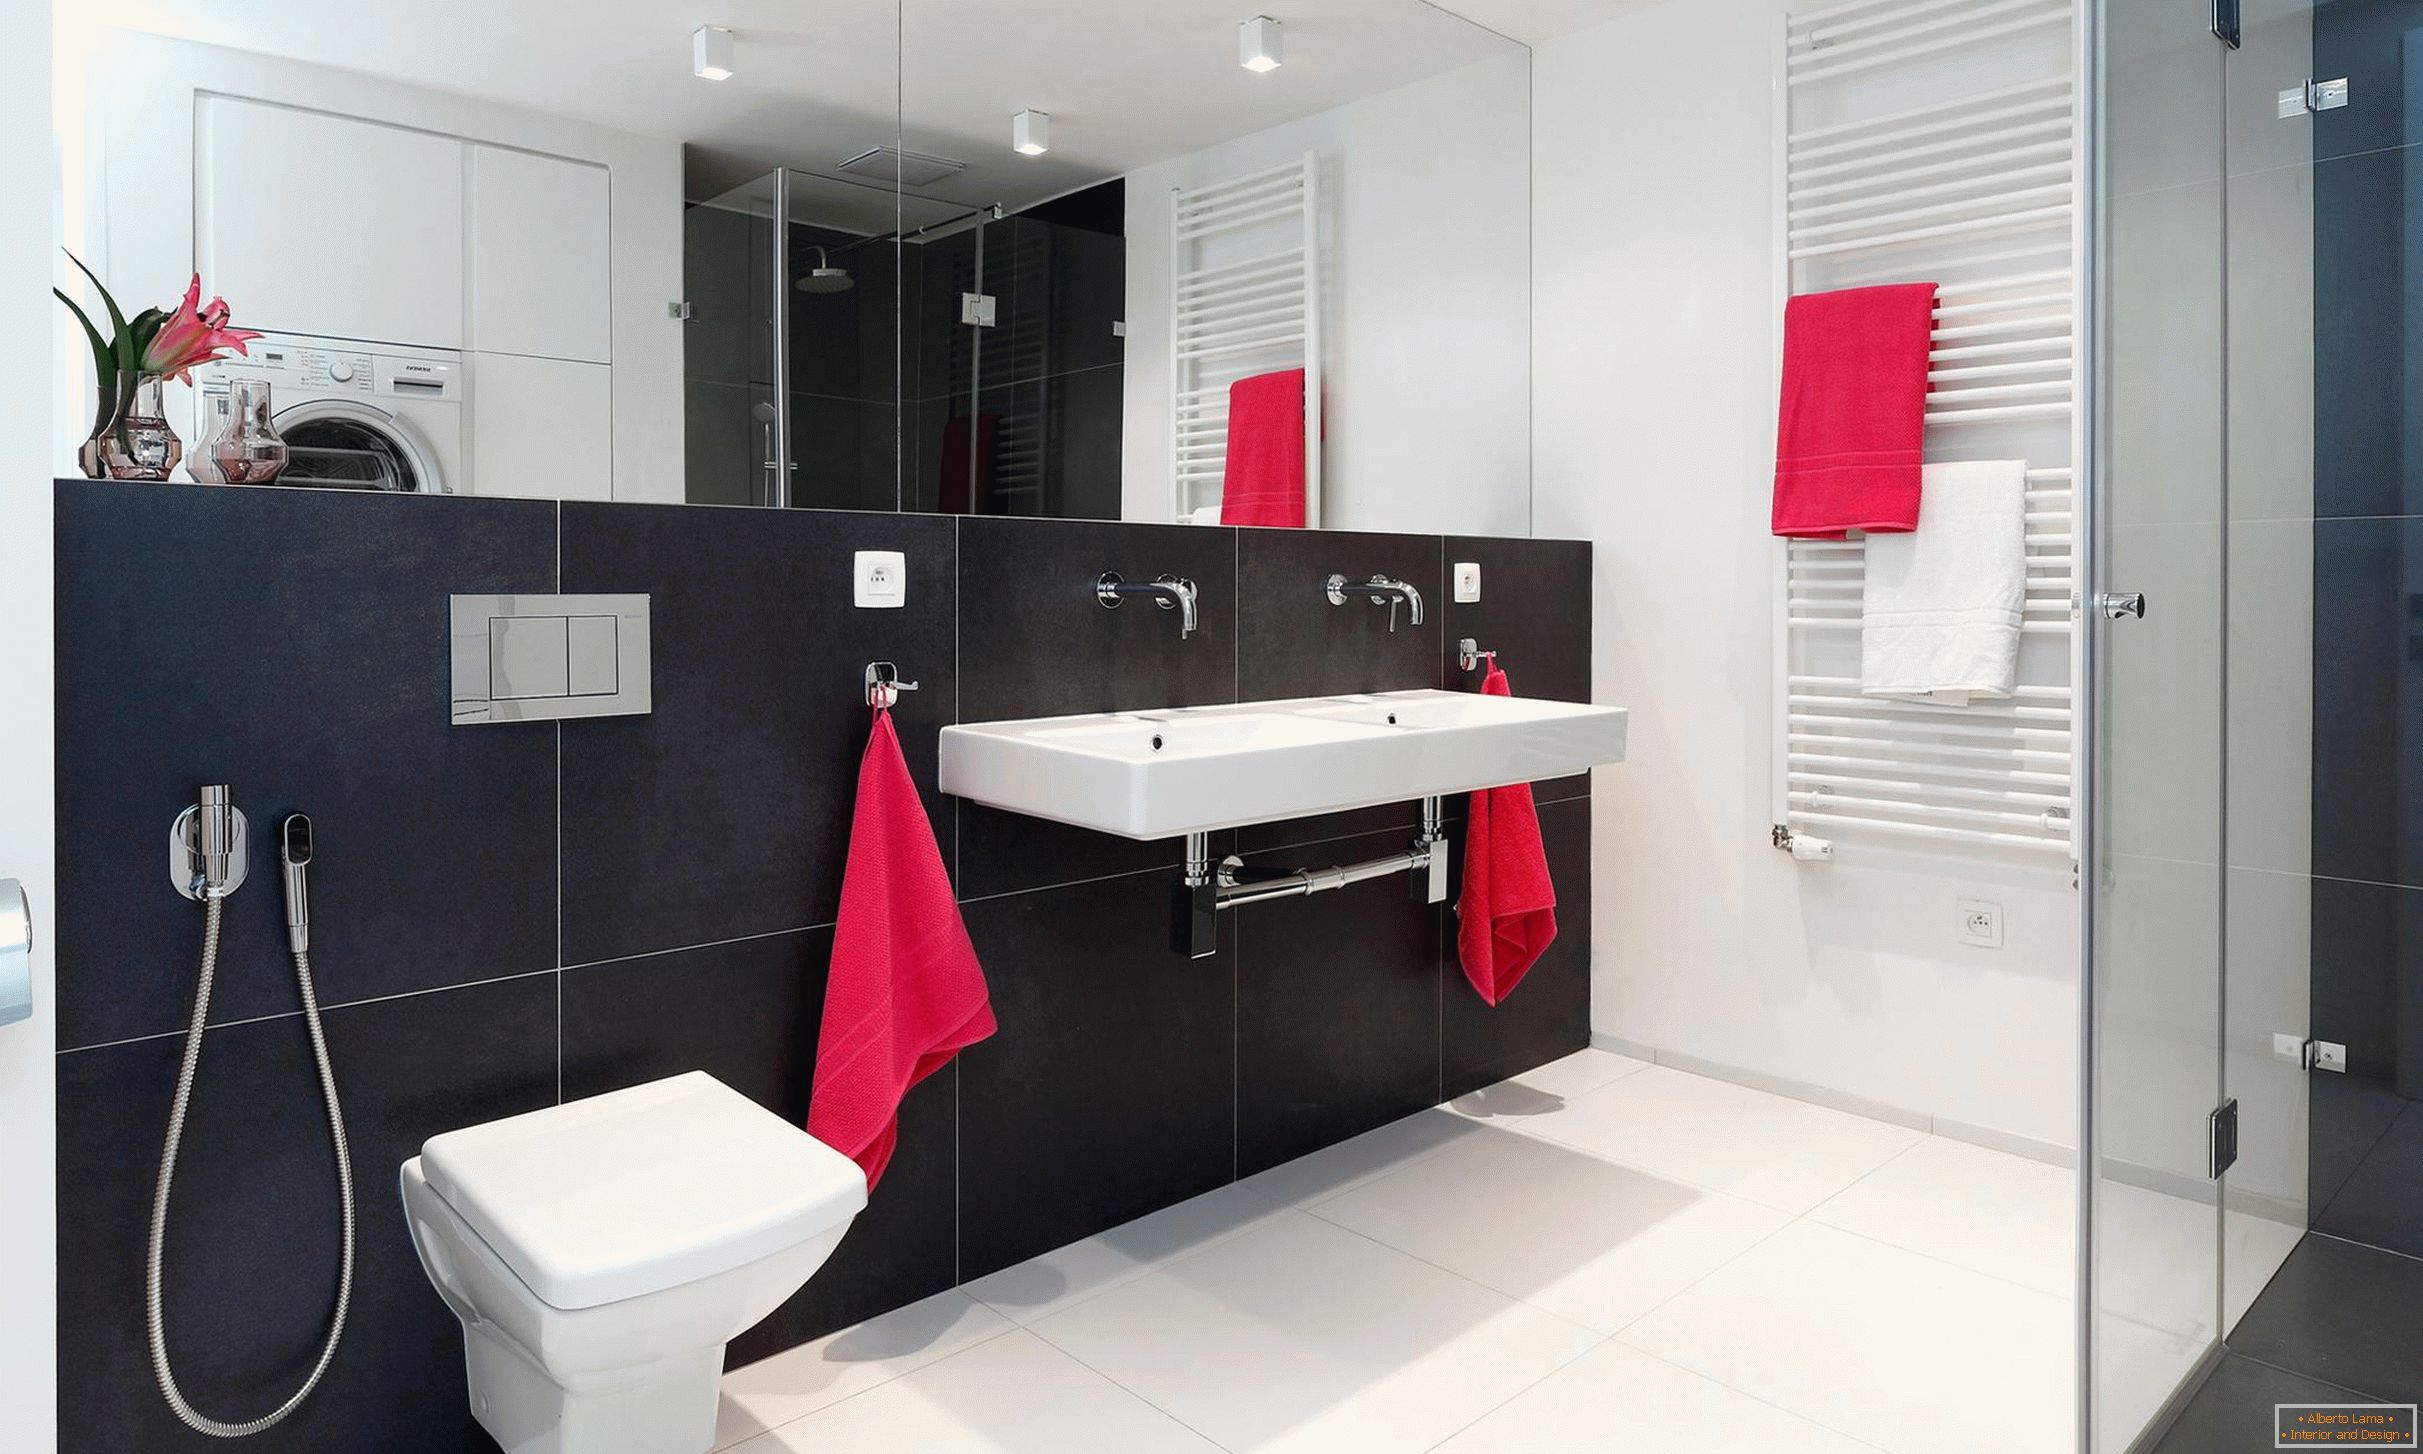 Piros, fehér és fekete a fürdőszoba kialakításában